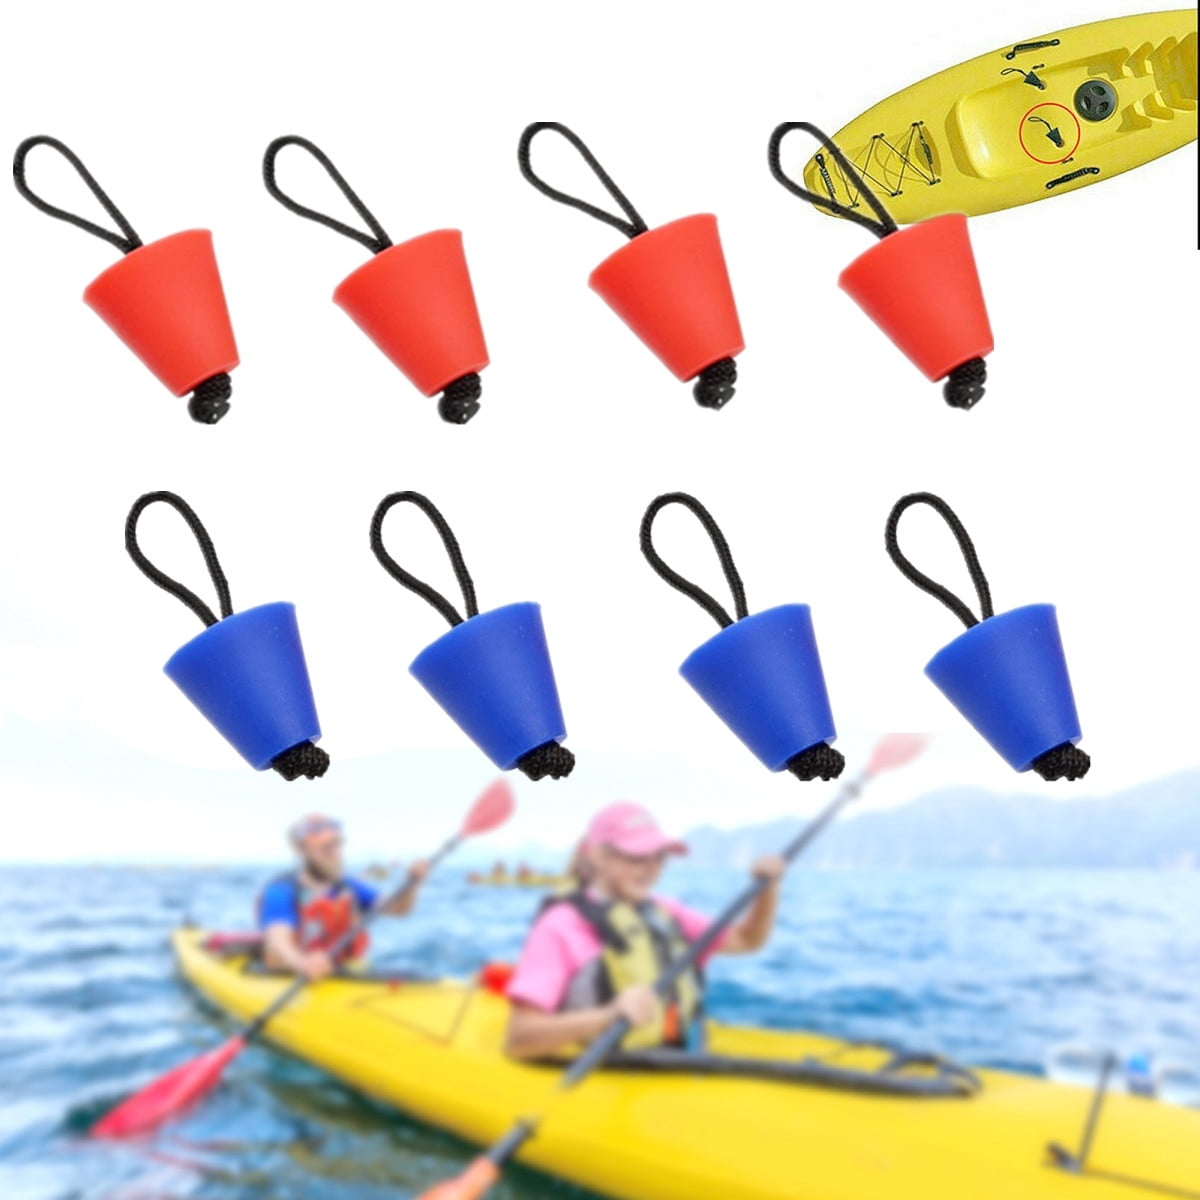 Universal Red Kayak Scupper Plug Kit Fit Hobie Kayak,Native Kayak,Feelfree Kayak